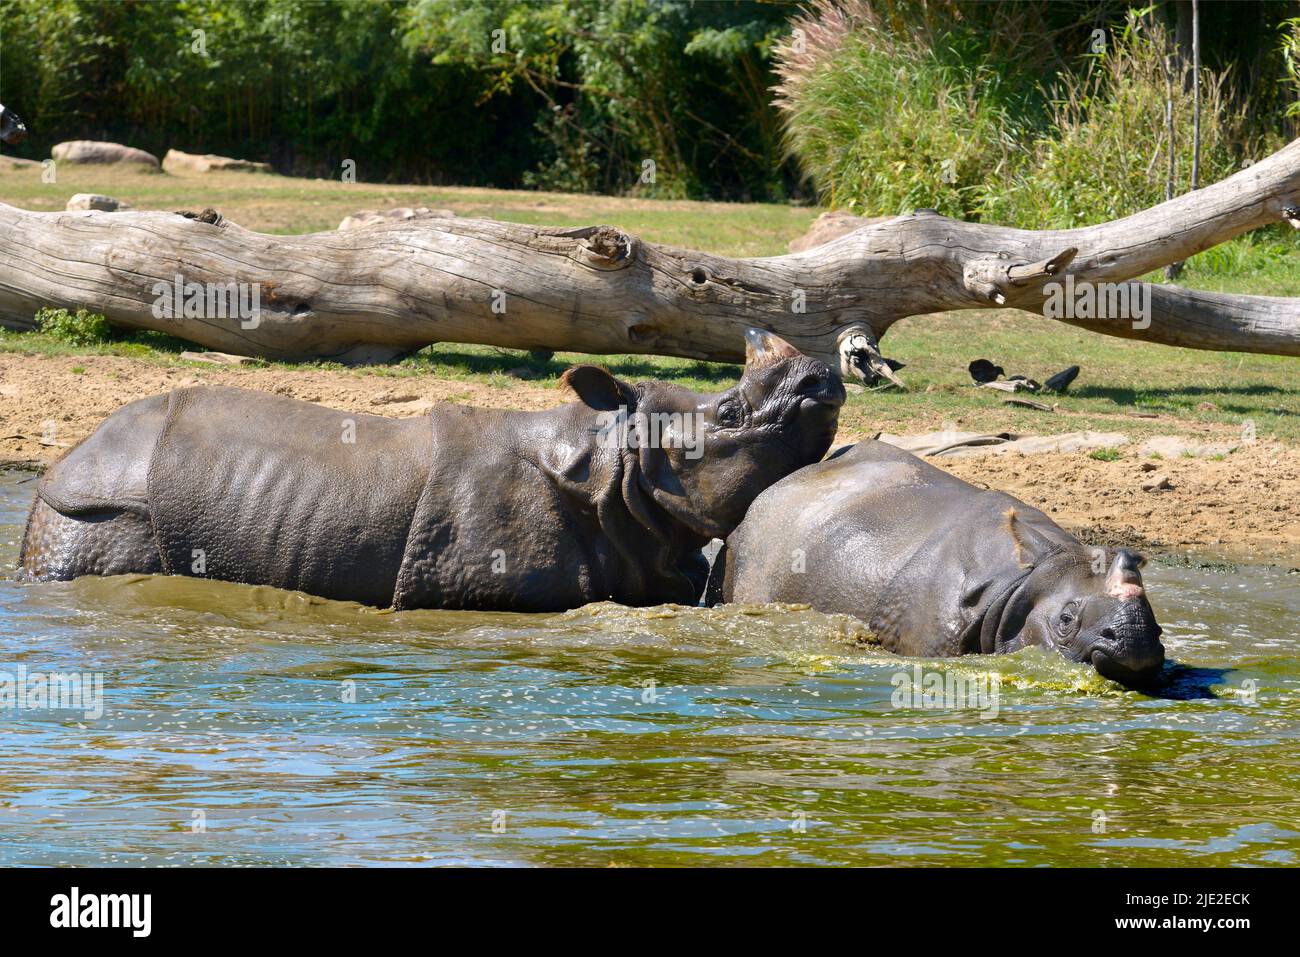 Rinocerontes indios (rinocerontes unicornis) jugando en el agua Foto de stock